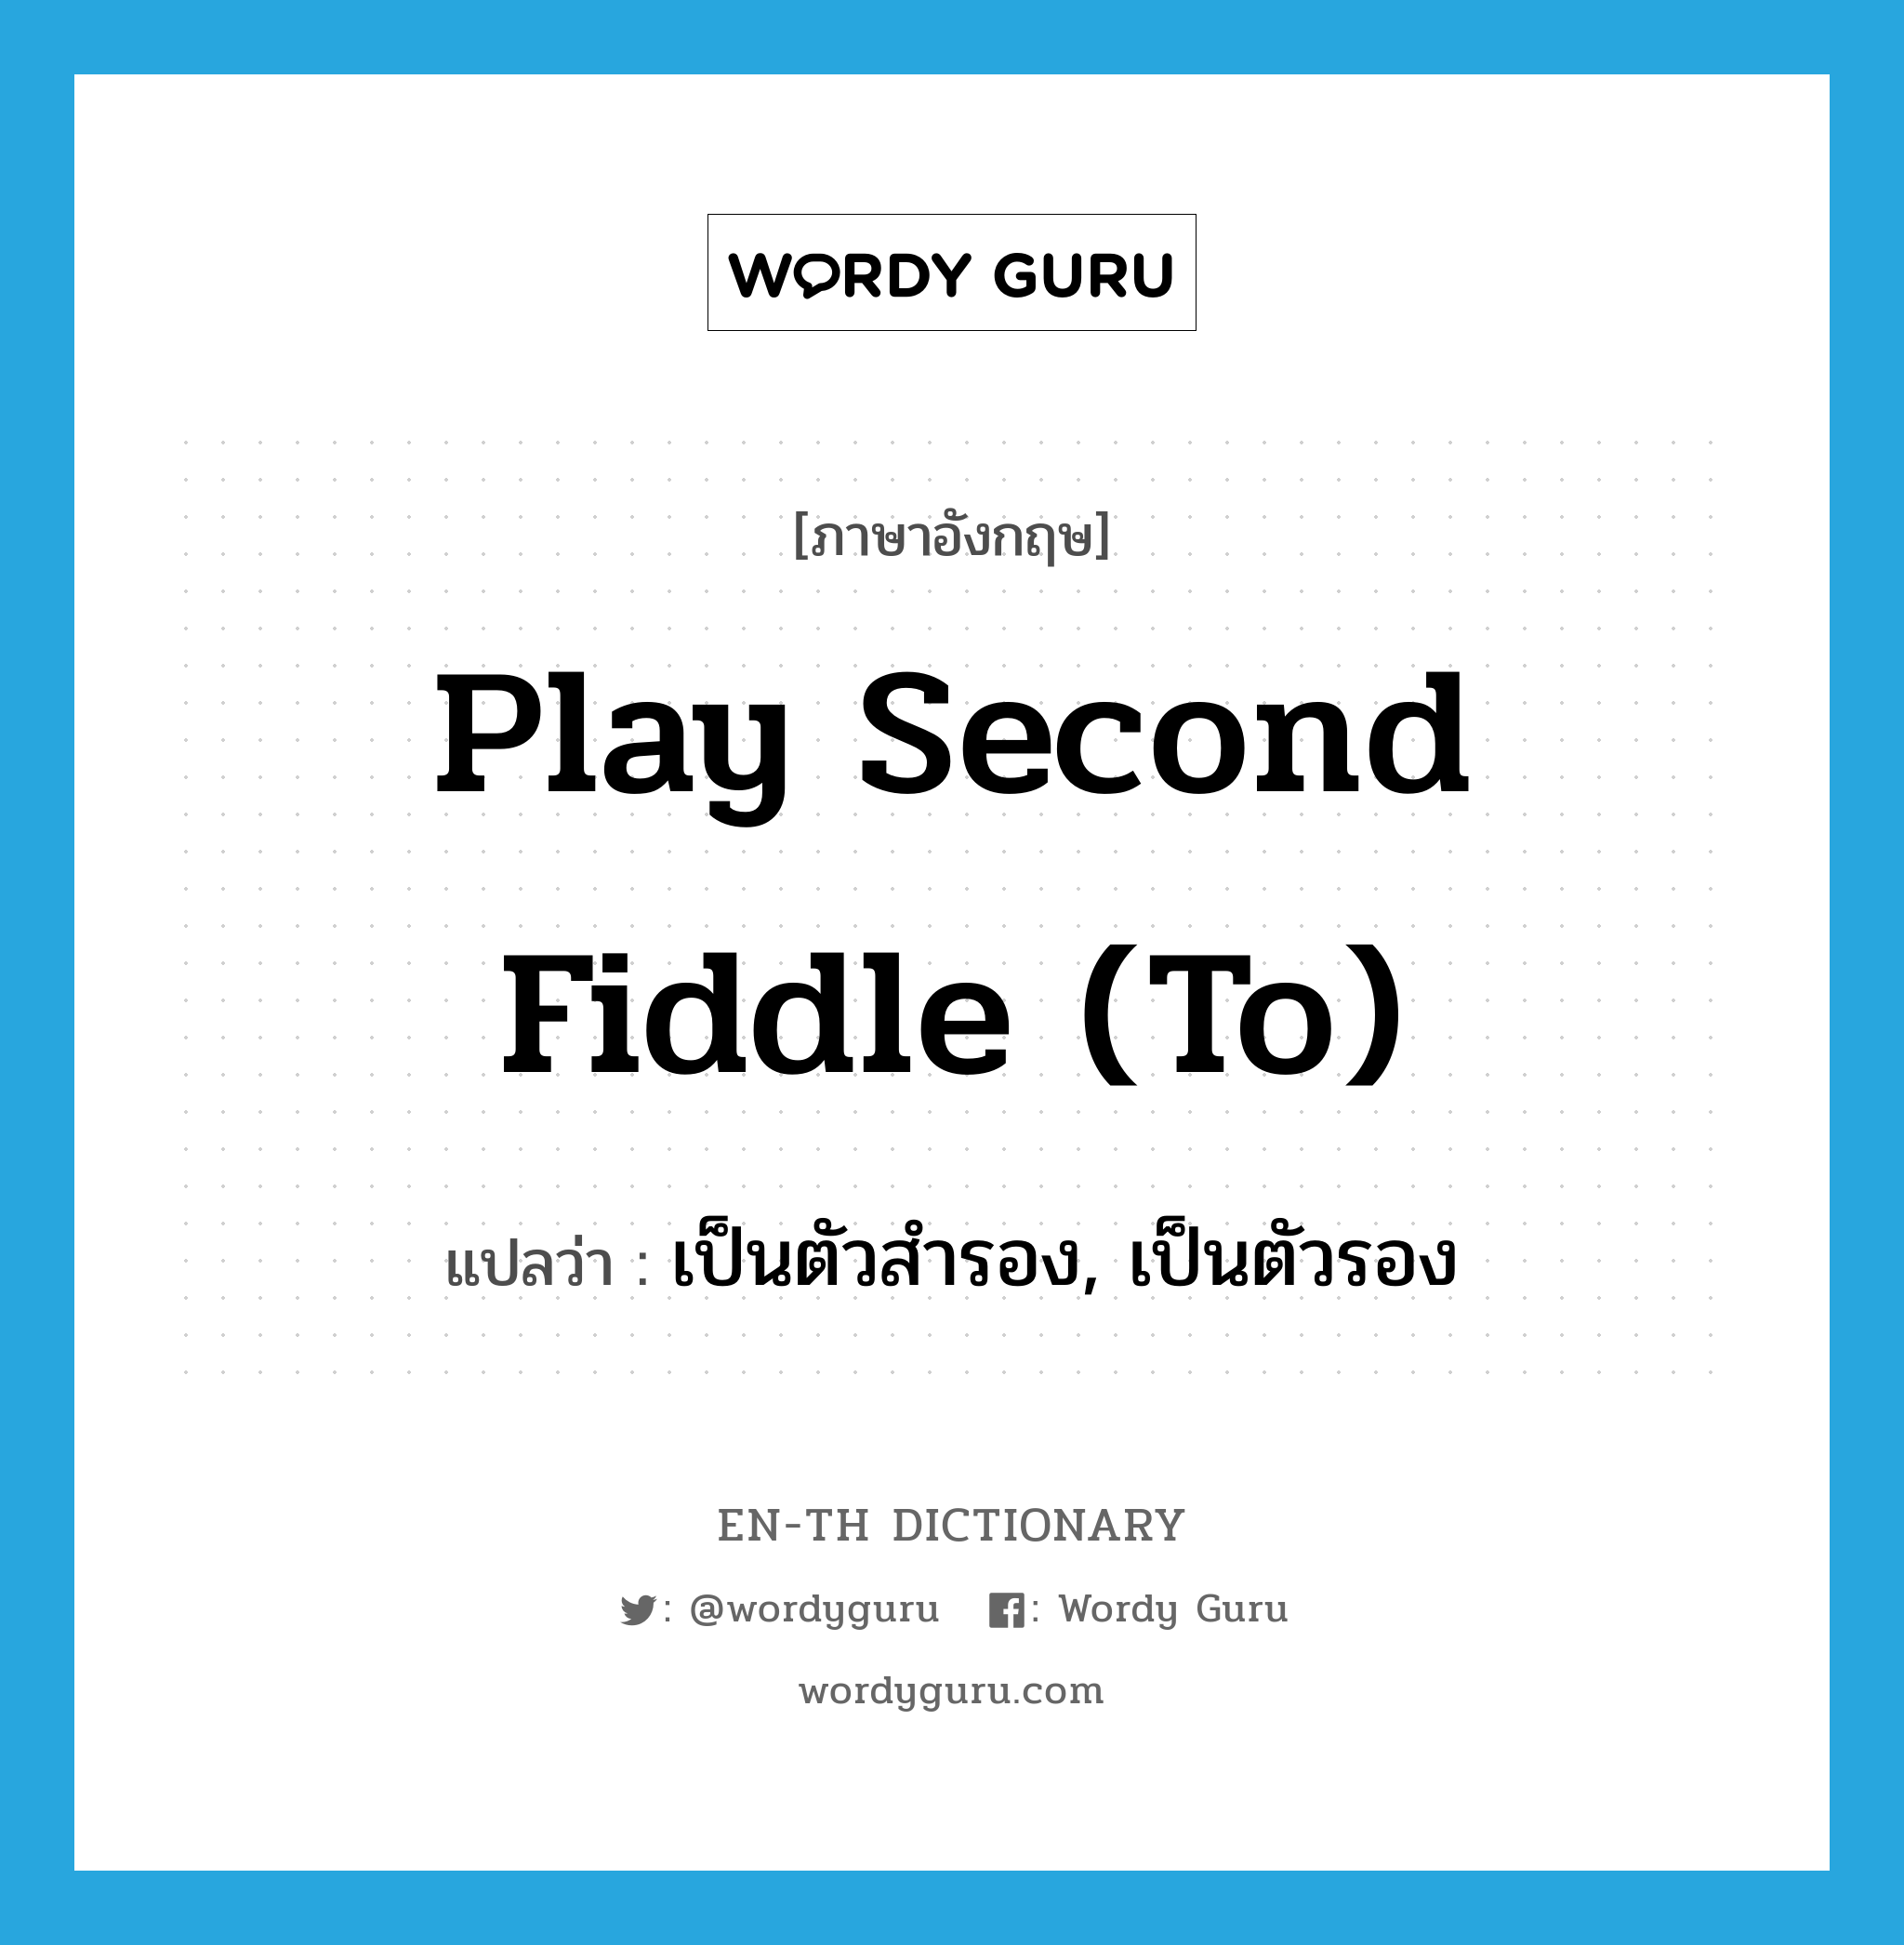 เป็นตัวสำรอง, เป็นตัวรอง ภาษาอังกฤษ?, คำศัพท์ภาษาอังกฤษ เป็นตัวสำรอง, เป็นตัวรอง แปลว่า play second fiddle (to) ประเภท IDM หมวด IDM